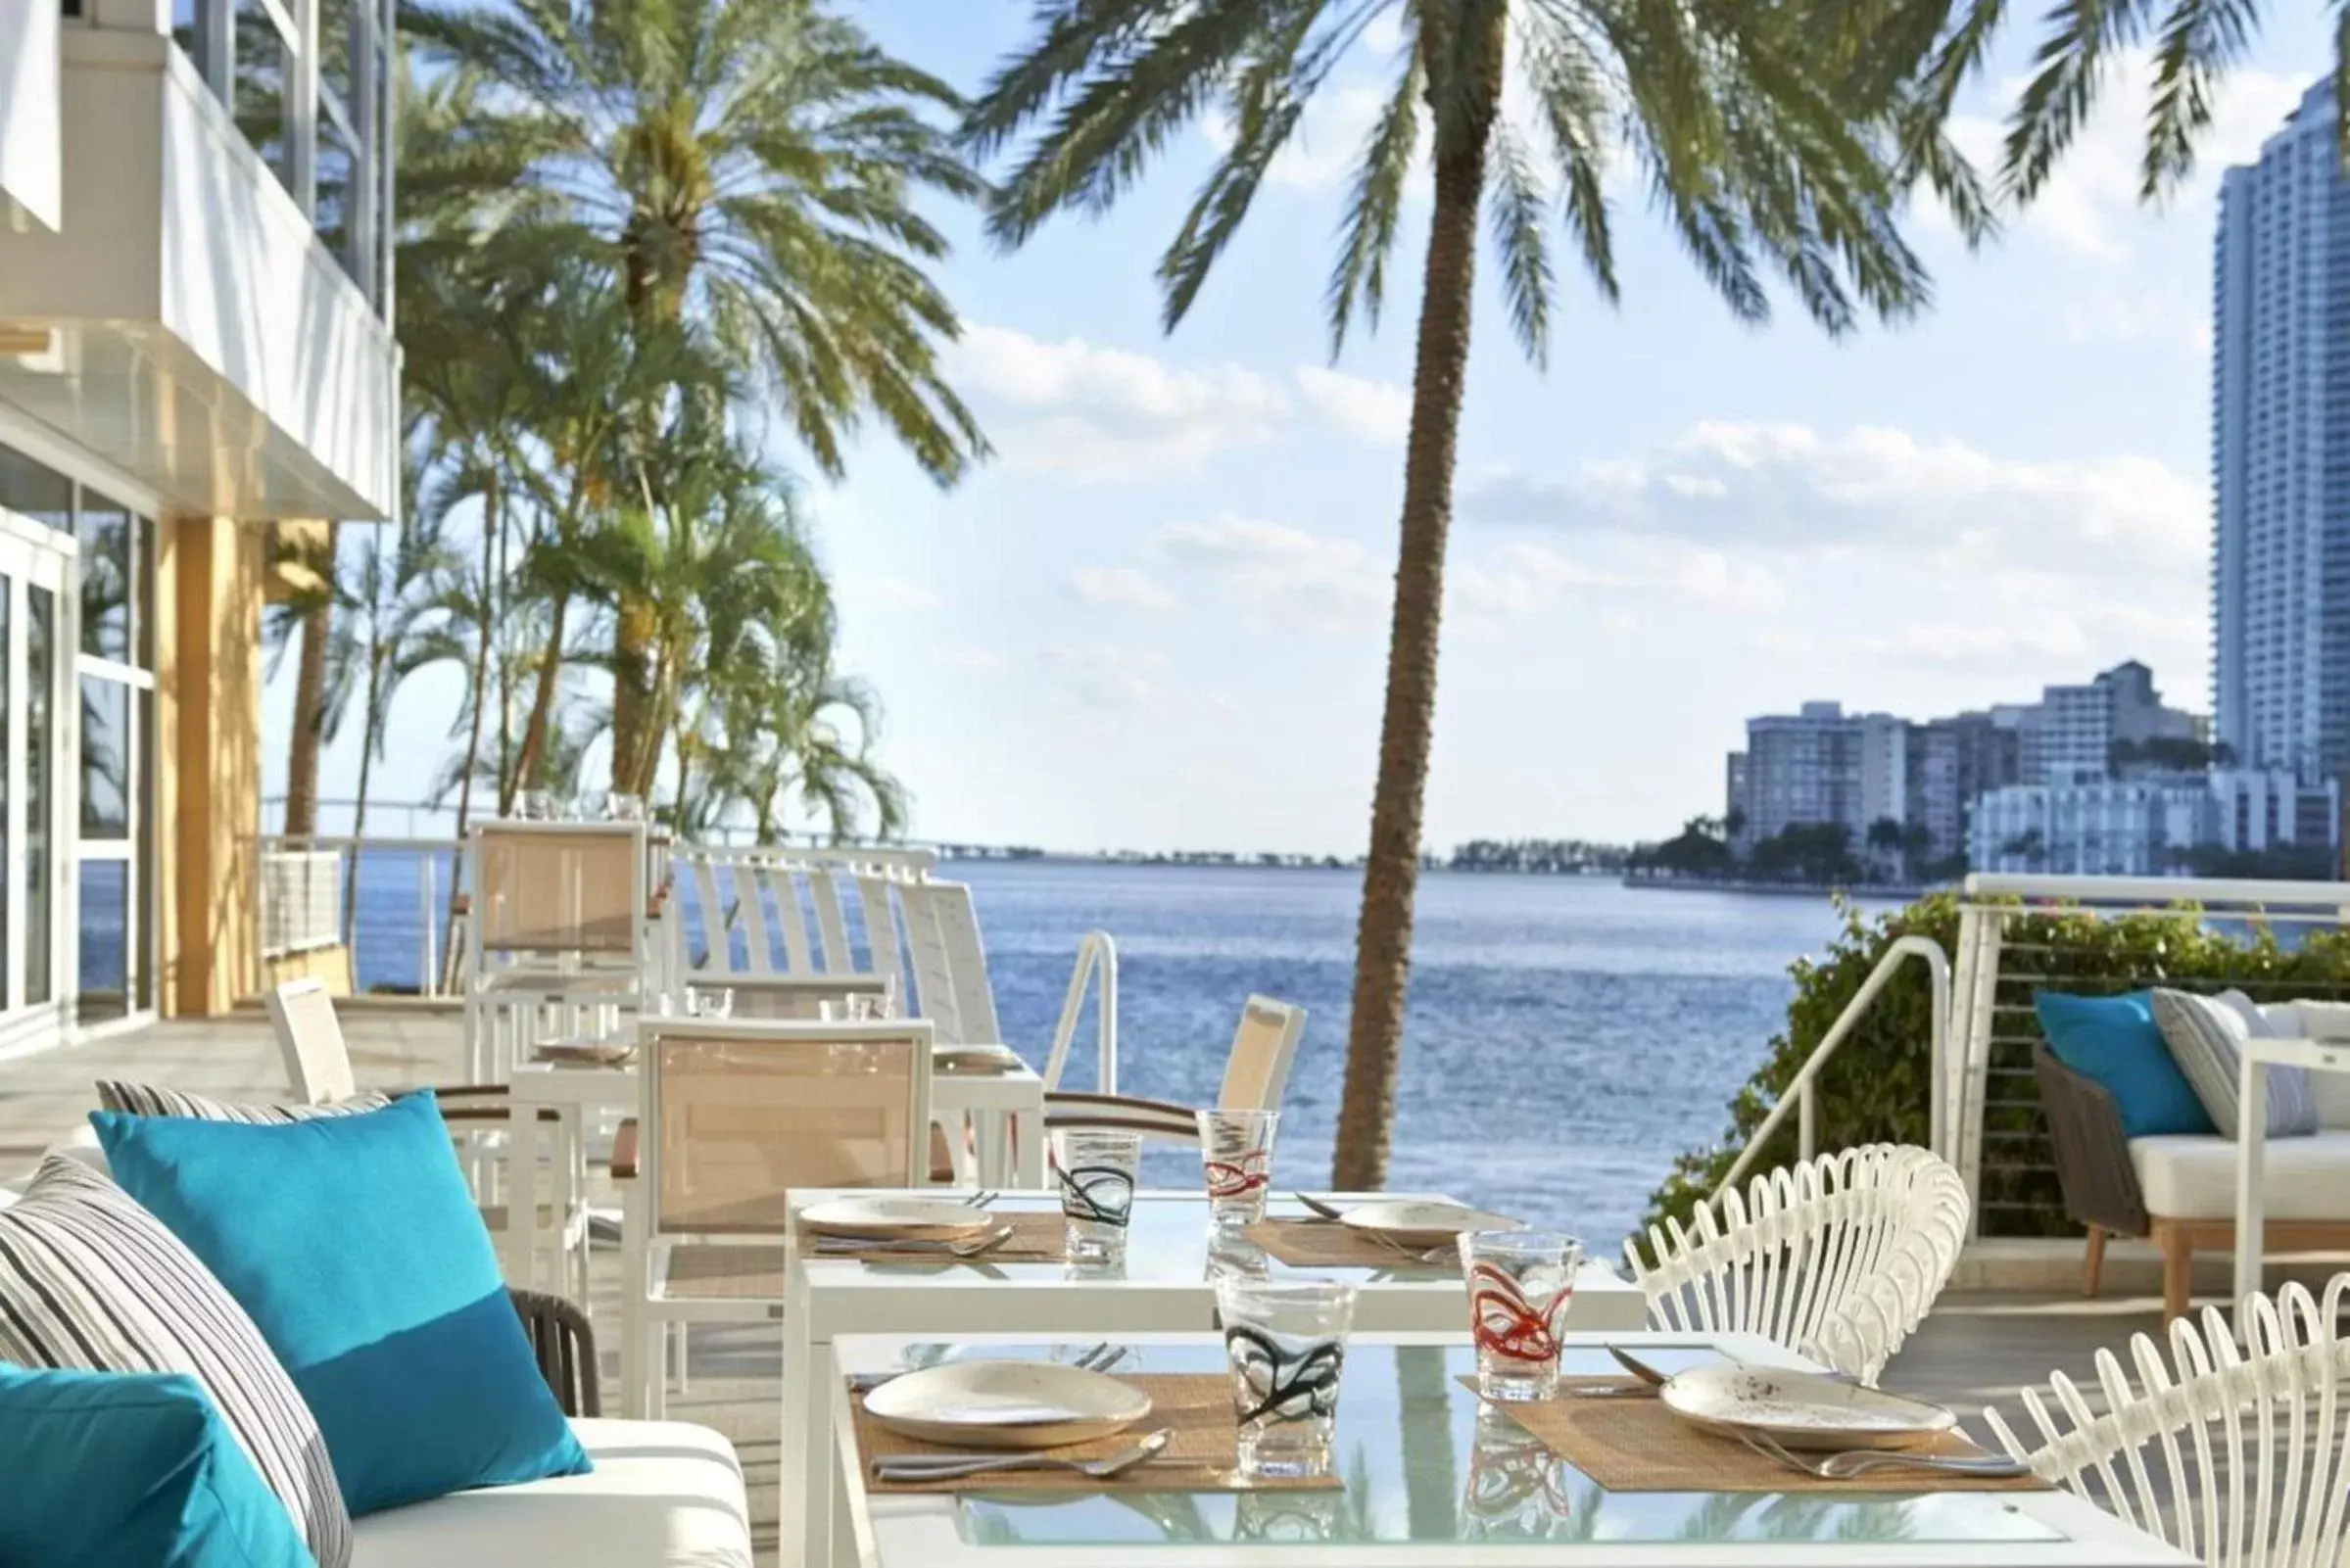 Restaurant/Places to Eat in Mandarin Oriental Miami